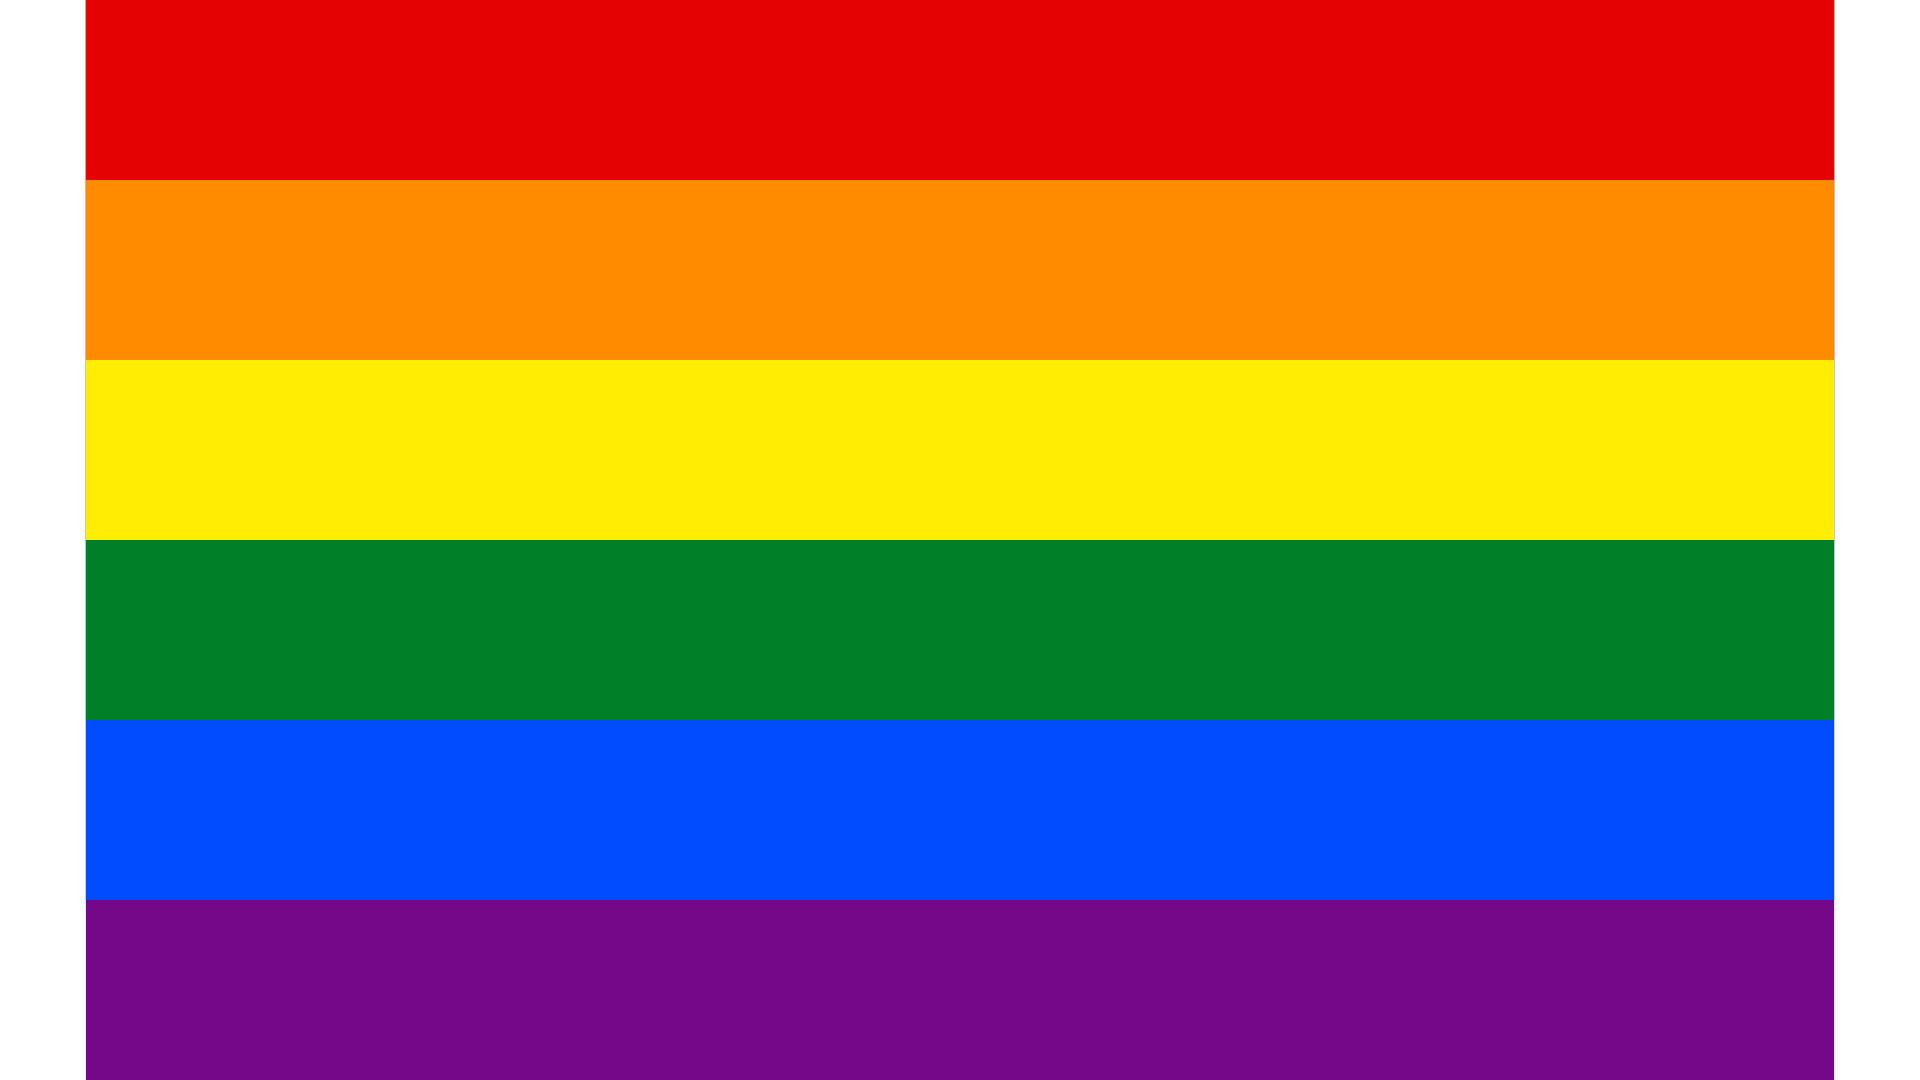 The stories behind Pride flag designs